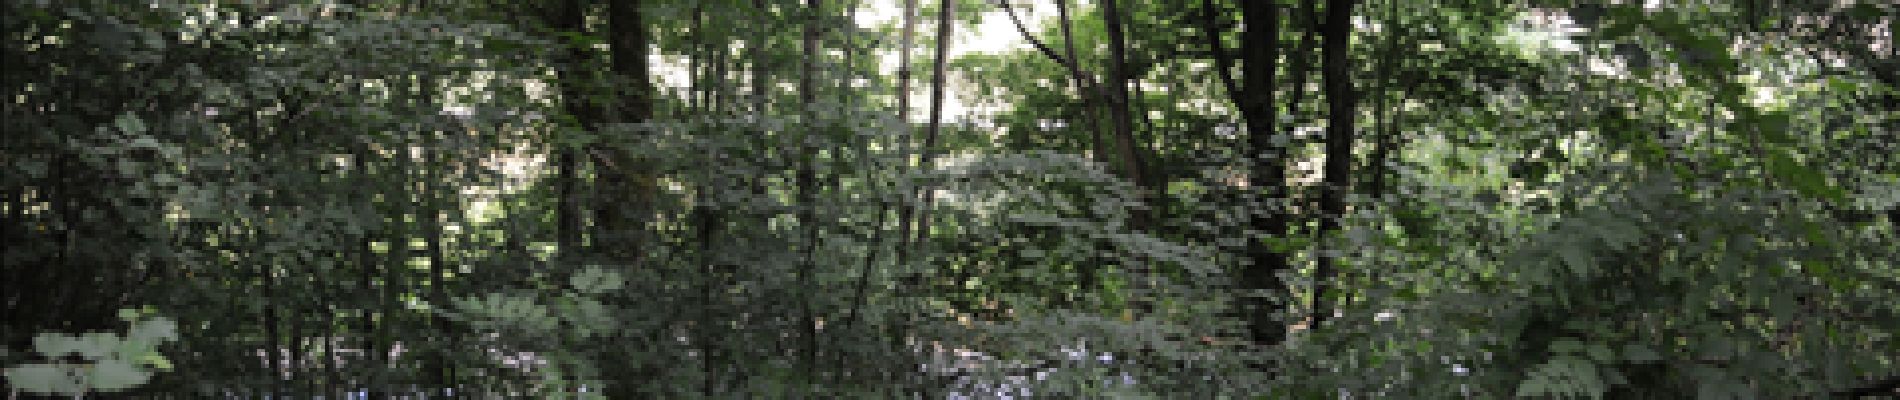 Punto di interesse Tellin - 5 - Une forêt riveraine - Photo